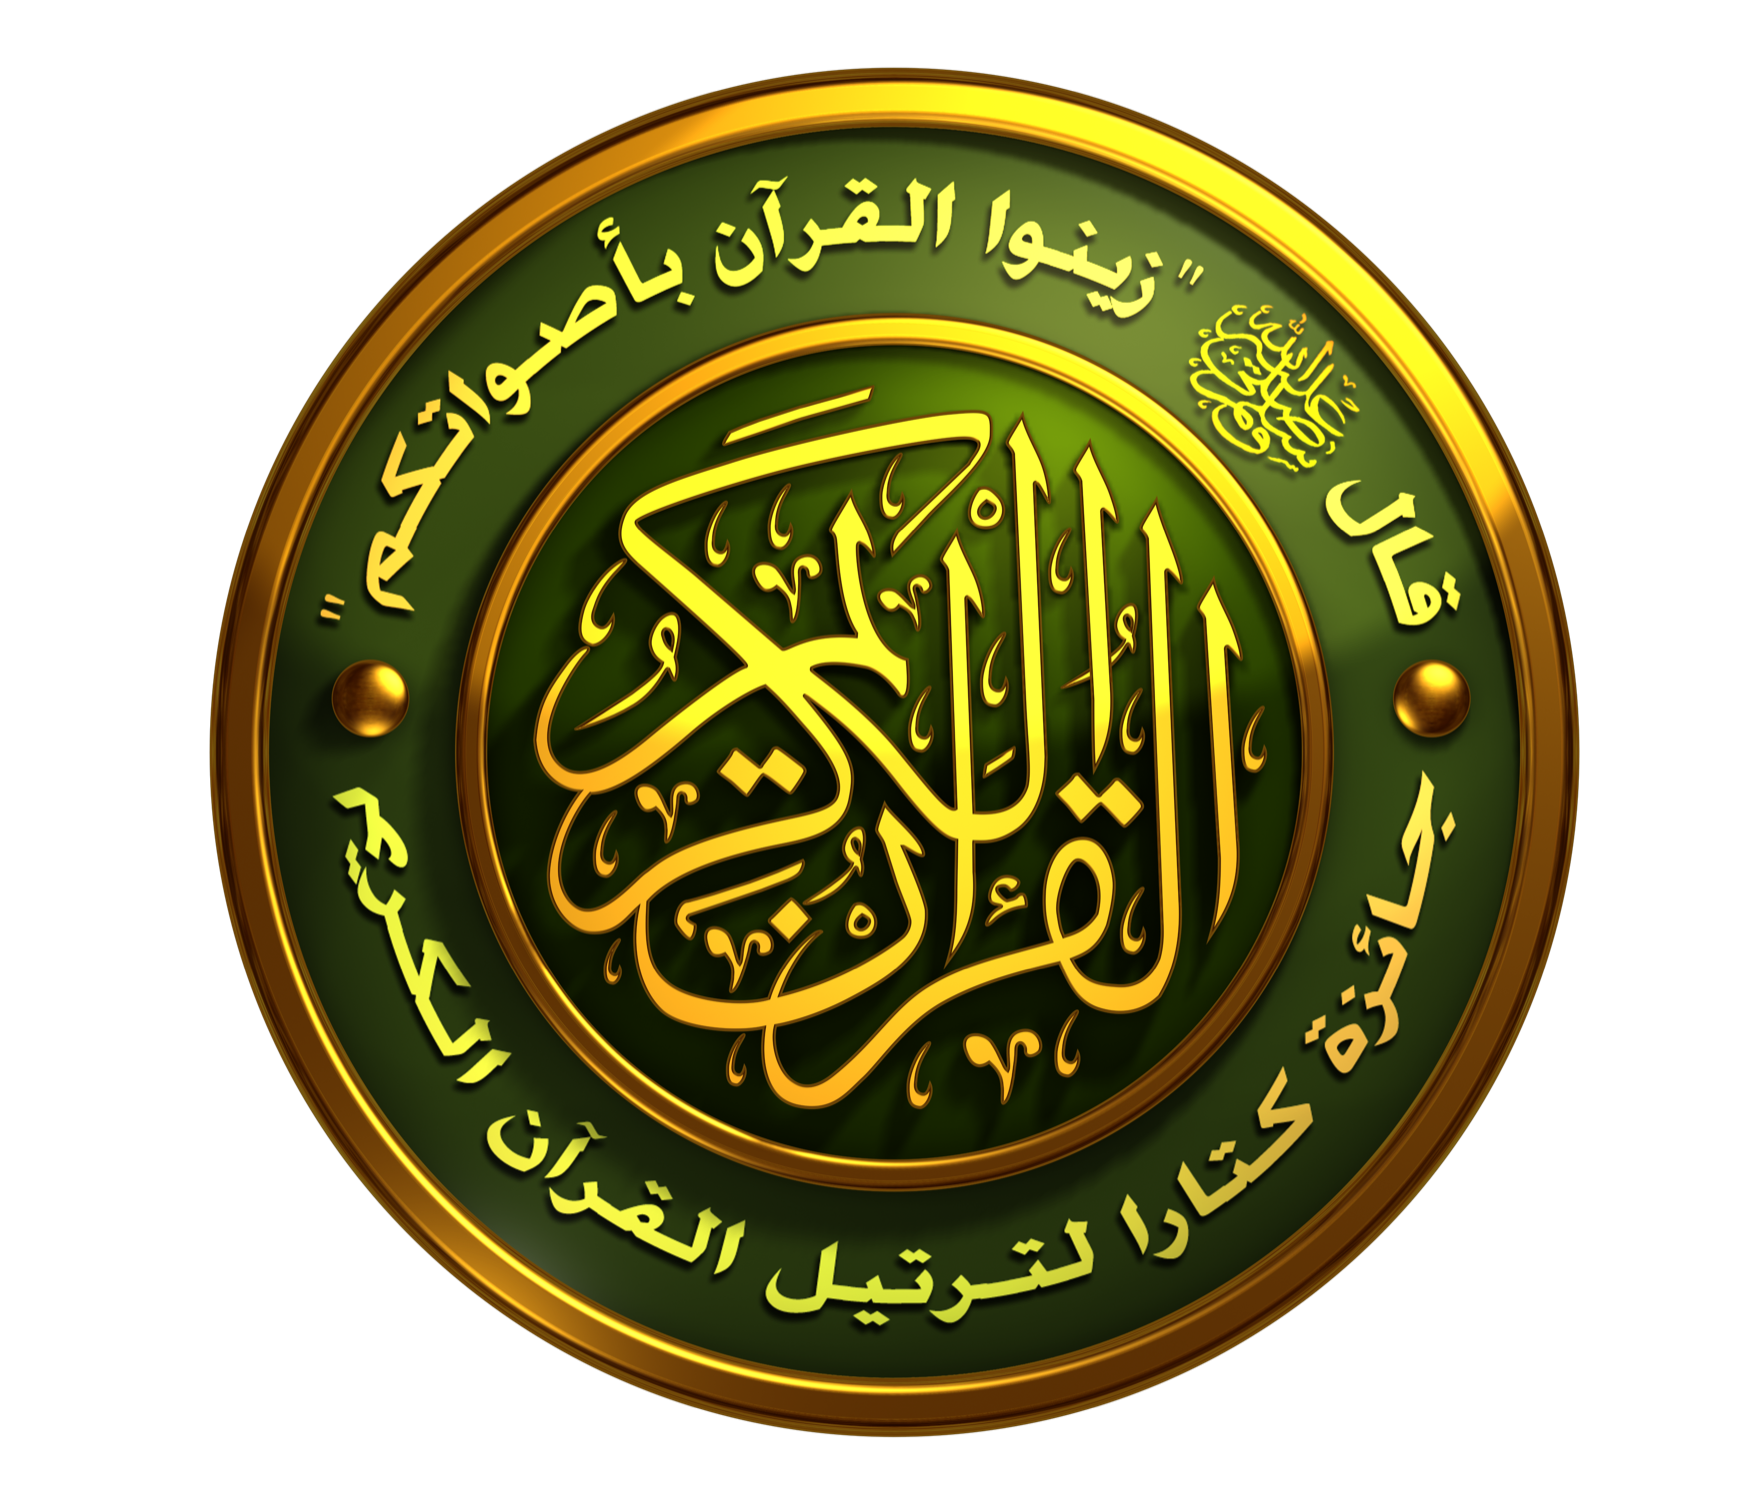 المشرف العام على جائزة كتارا لتلاوة القرآن: لجنة التحكيم تتكون من 6 أعضاء